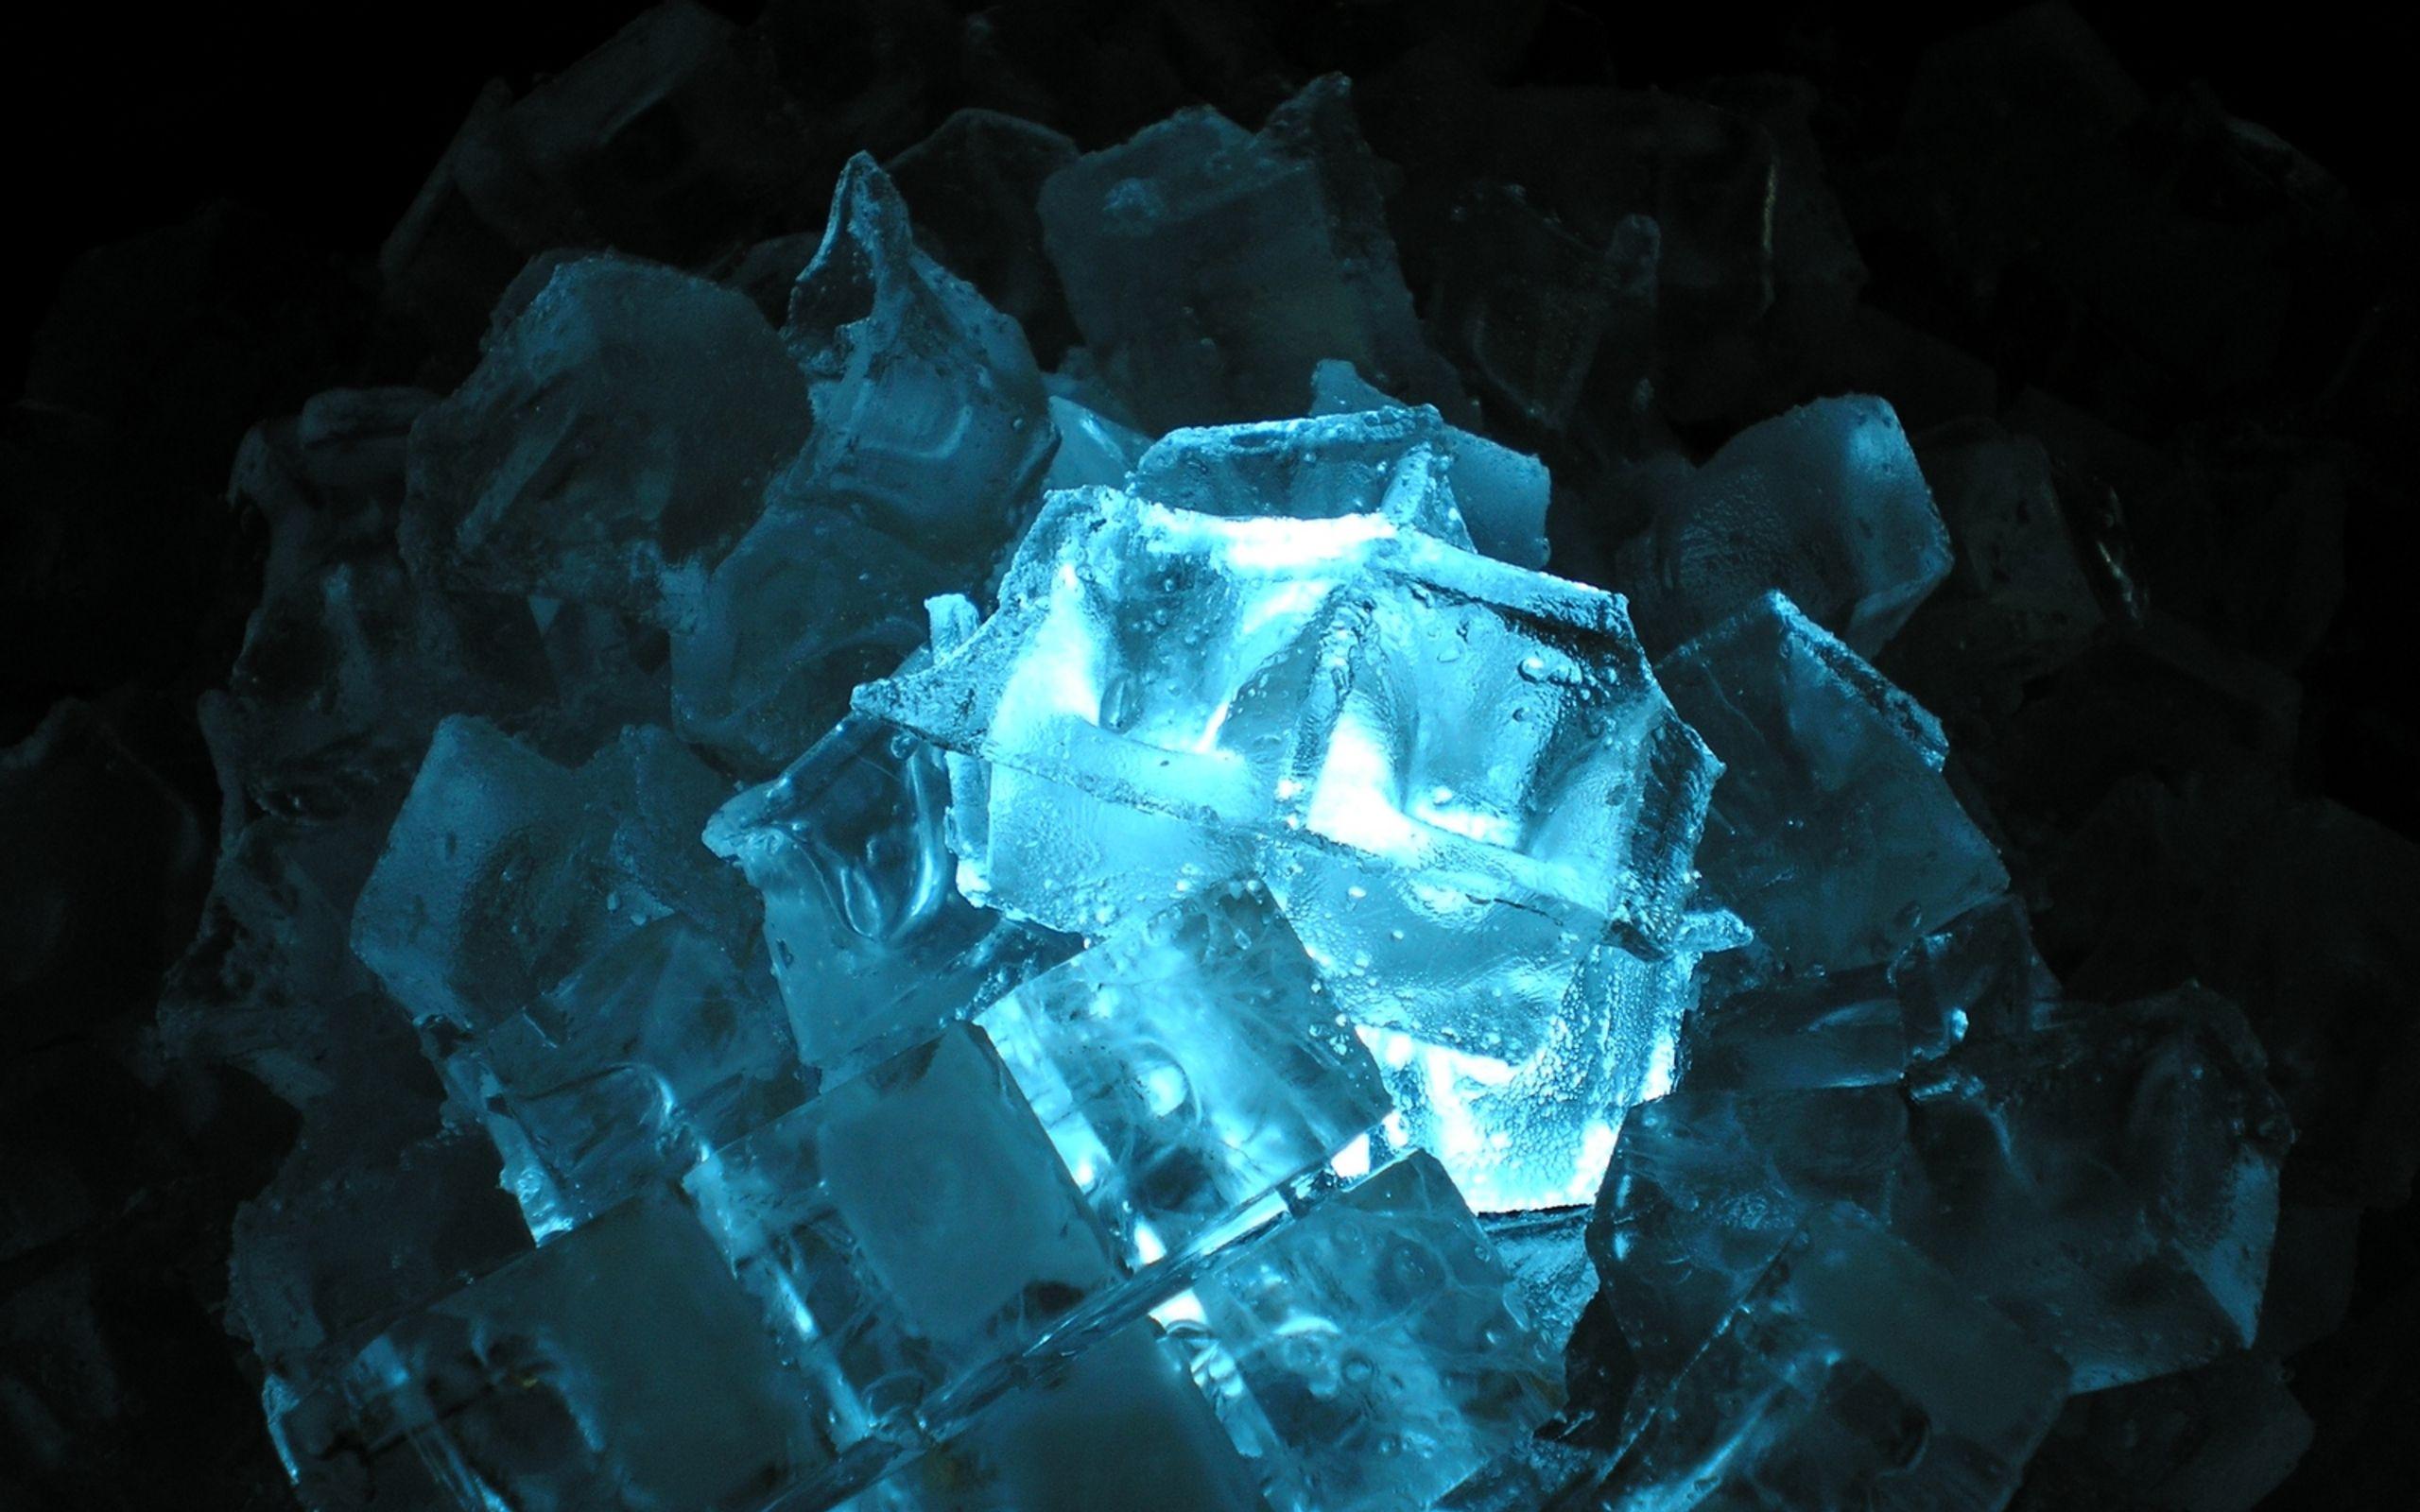 V.13 Mineral, HQFX Image